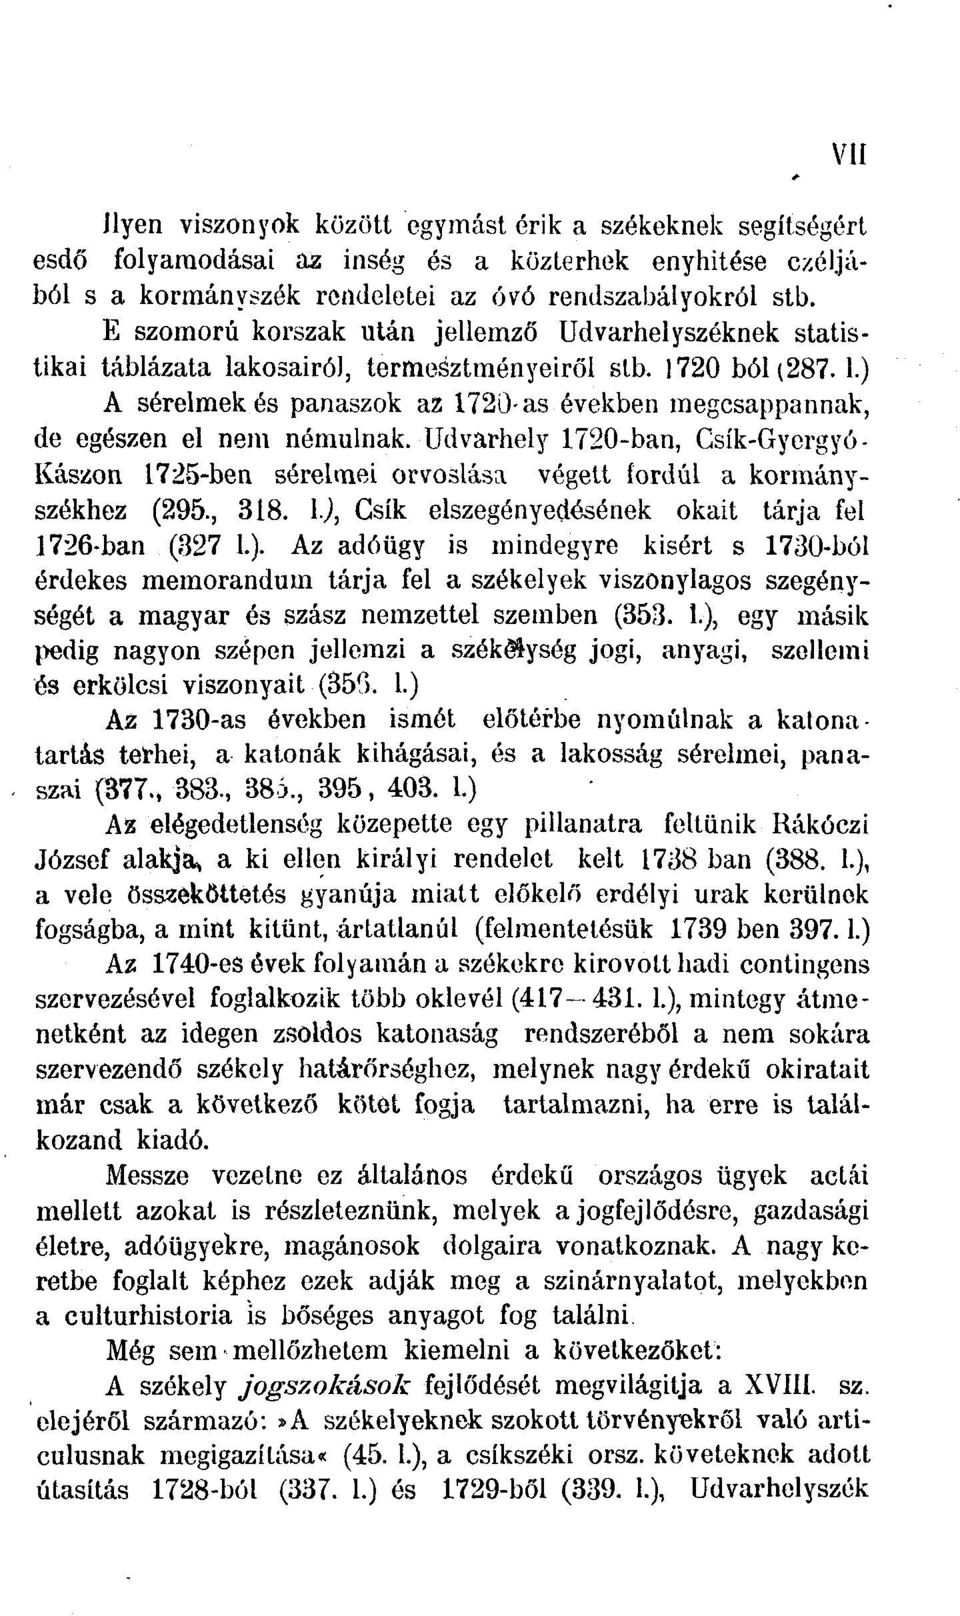 Udvarhely 1720-ban, Csík-Gyergyó- Kászon 1725-ben sérelmei orvoslása végett fordul a kormányszékhez (295., 318. I.),